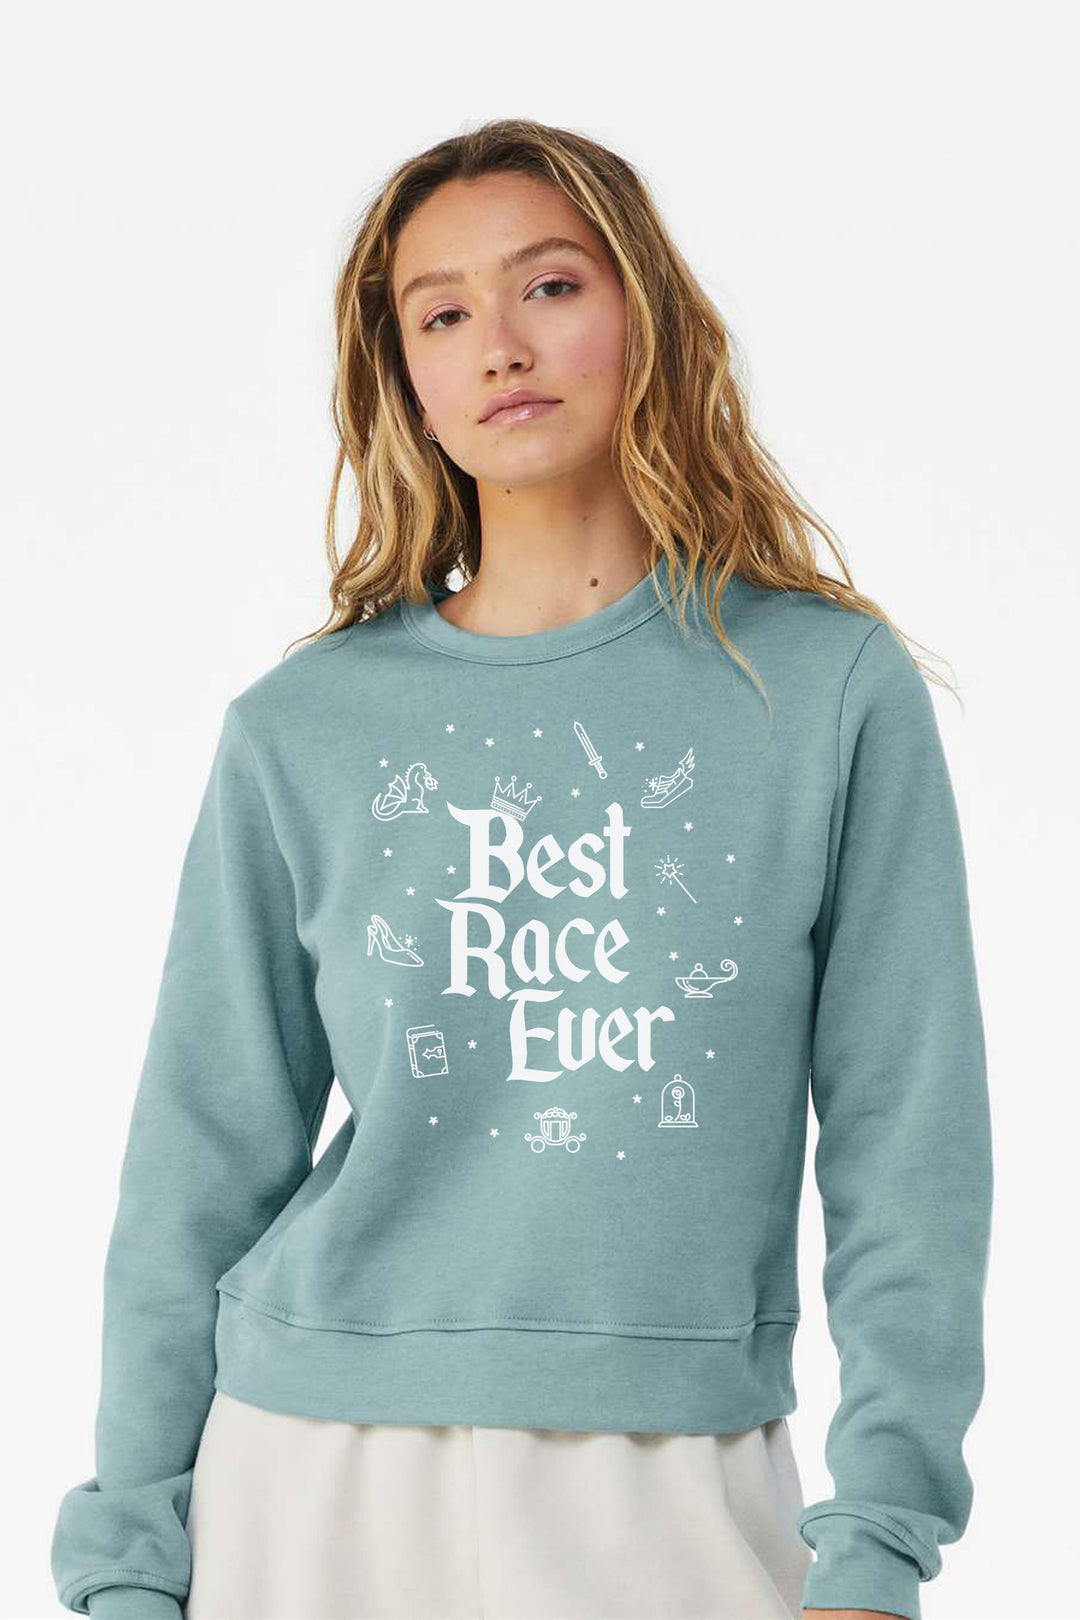 Sarah Marie Design Studio Sweatshirt Best Race Ever Women's Sweatshirt